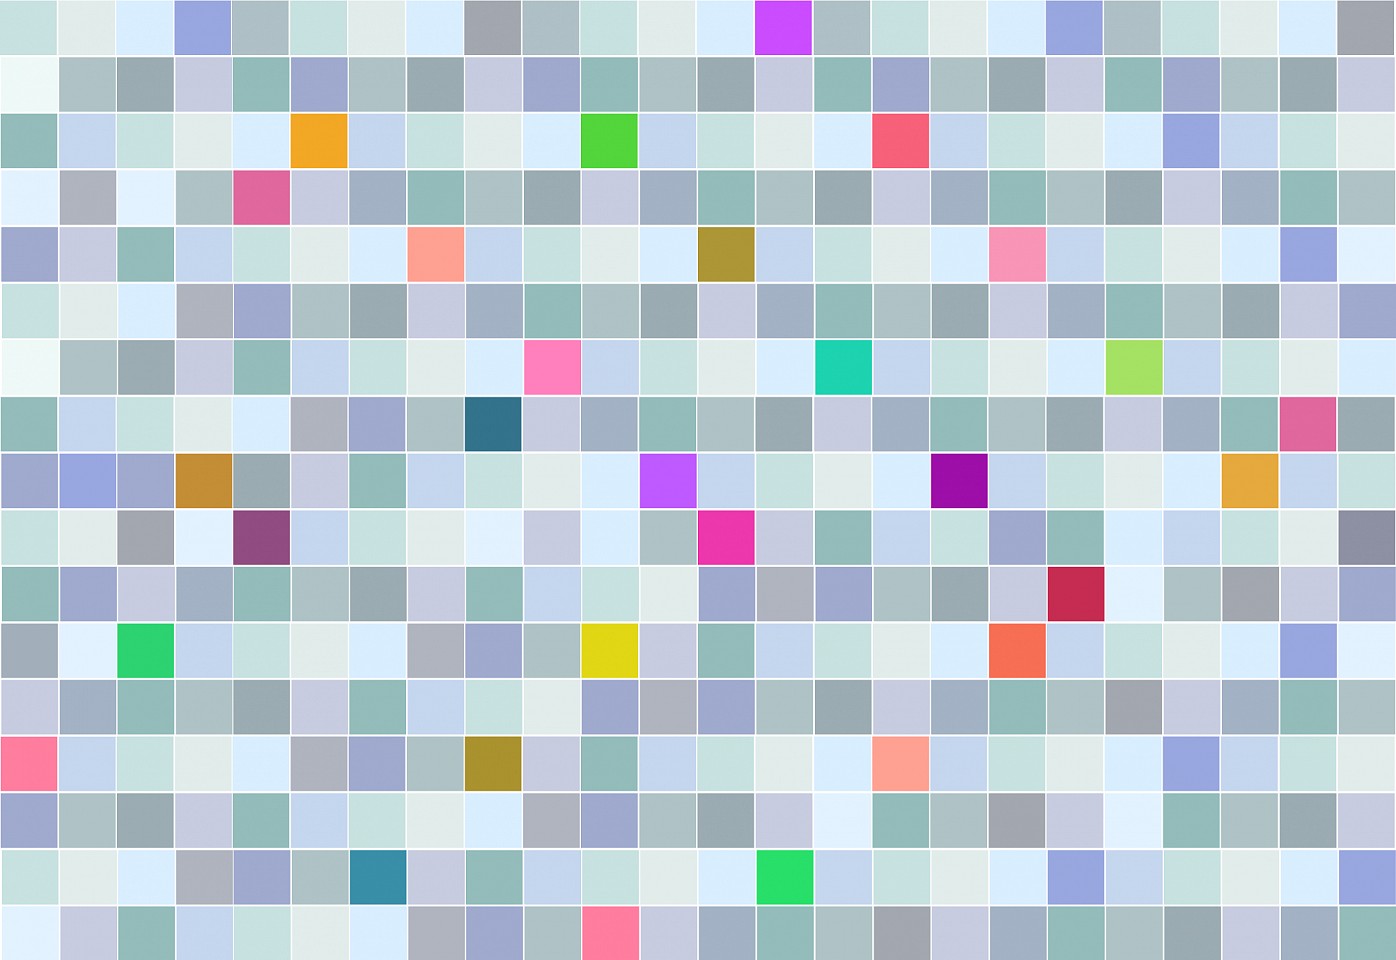 Dane Albert, Color Blocks #25, 2023
Acrylic on canvas (Concept), 48 x 60 in. (121.9 x 152.4 cm)
Series of colored blocks in multiple configurations
DA.cb-2023-025